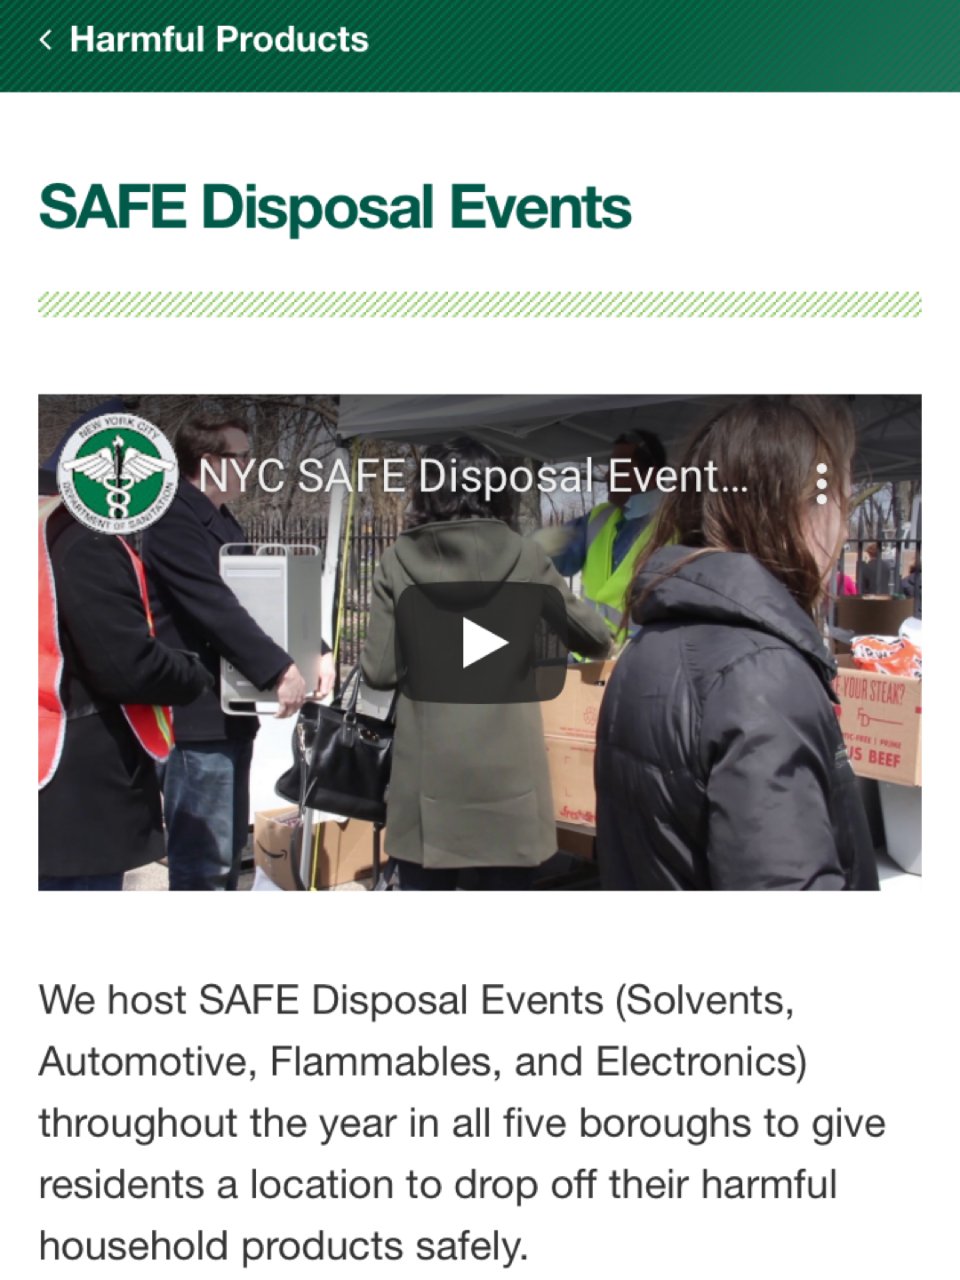 NYC SAFE Disposal Events 晒晒圈美国生活精选